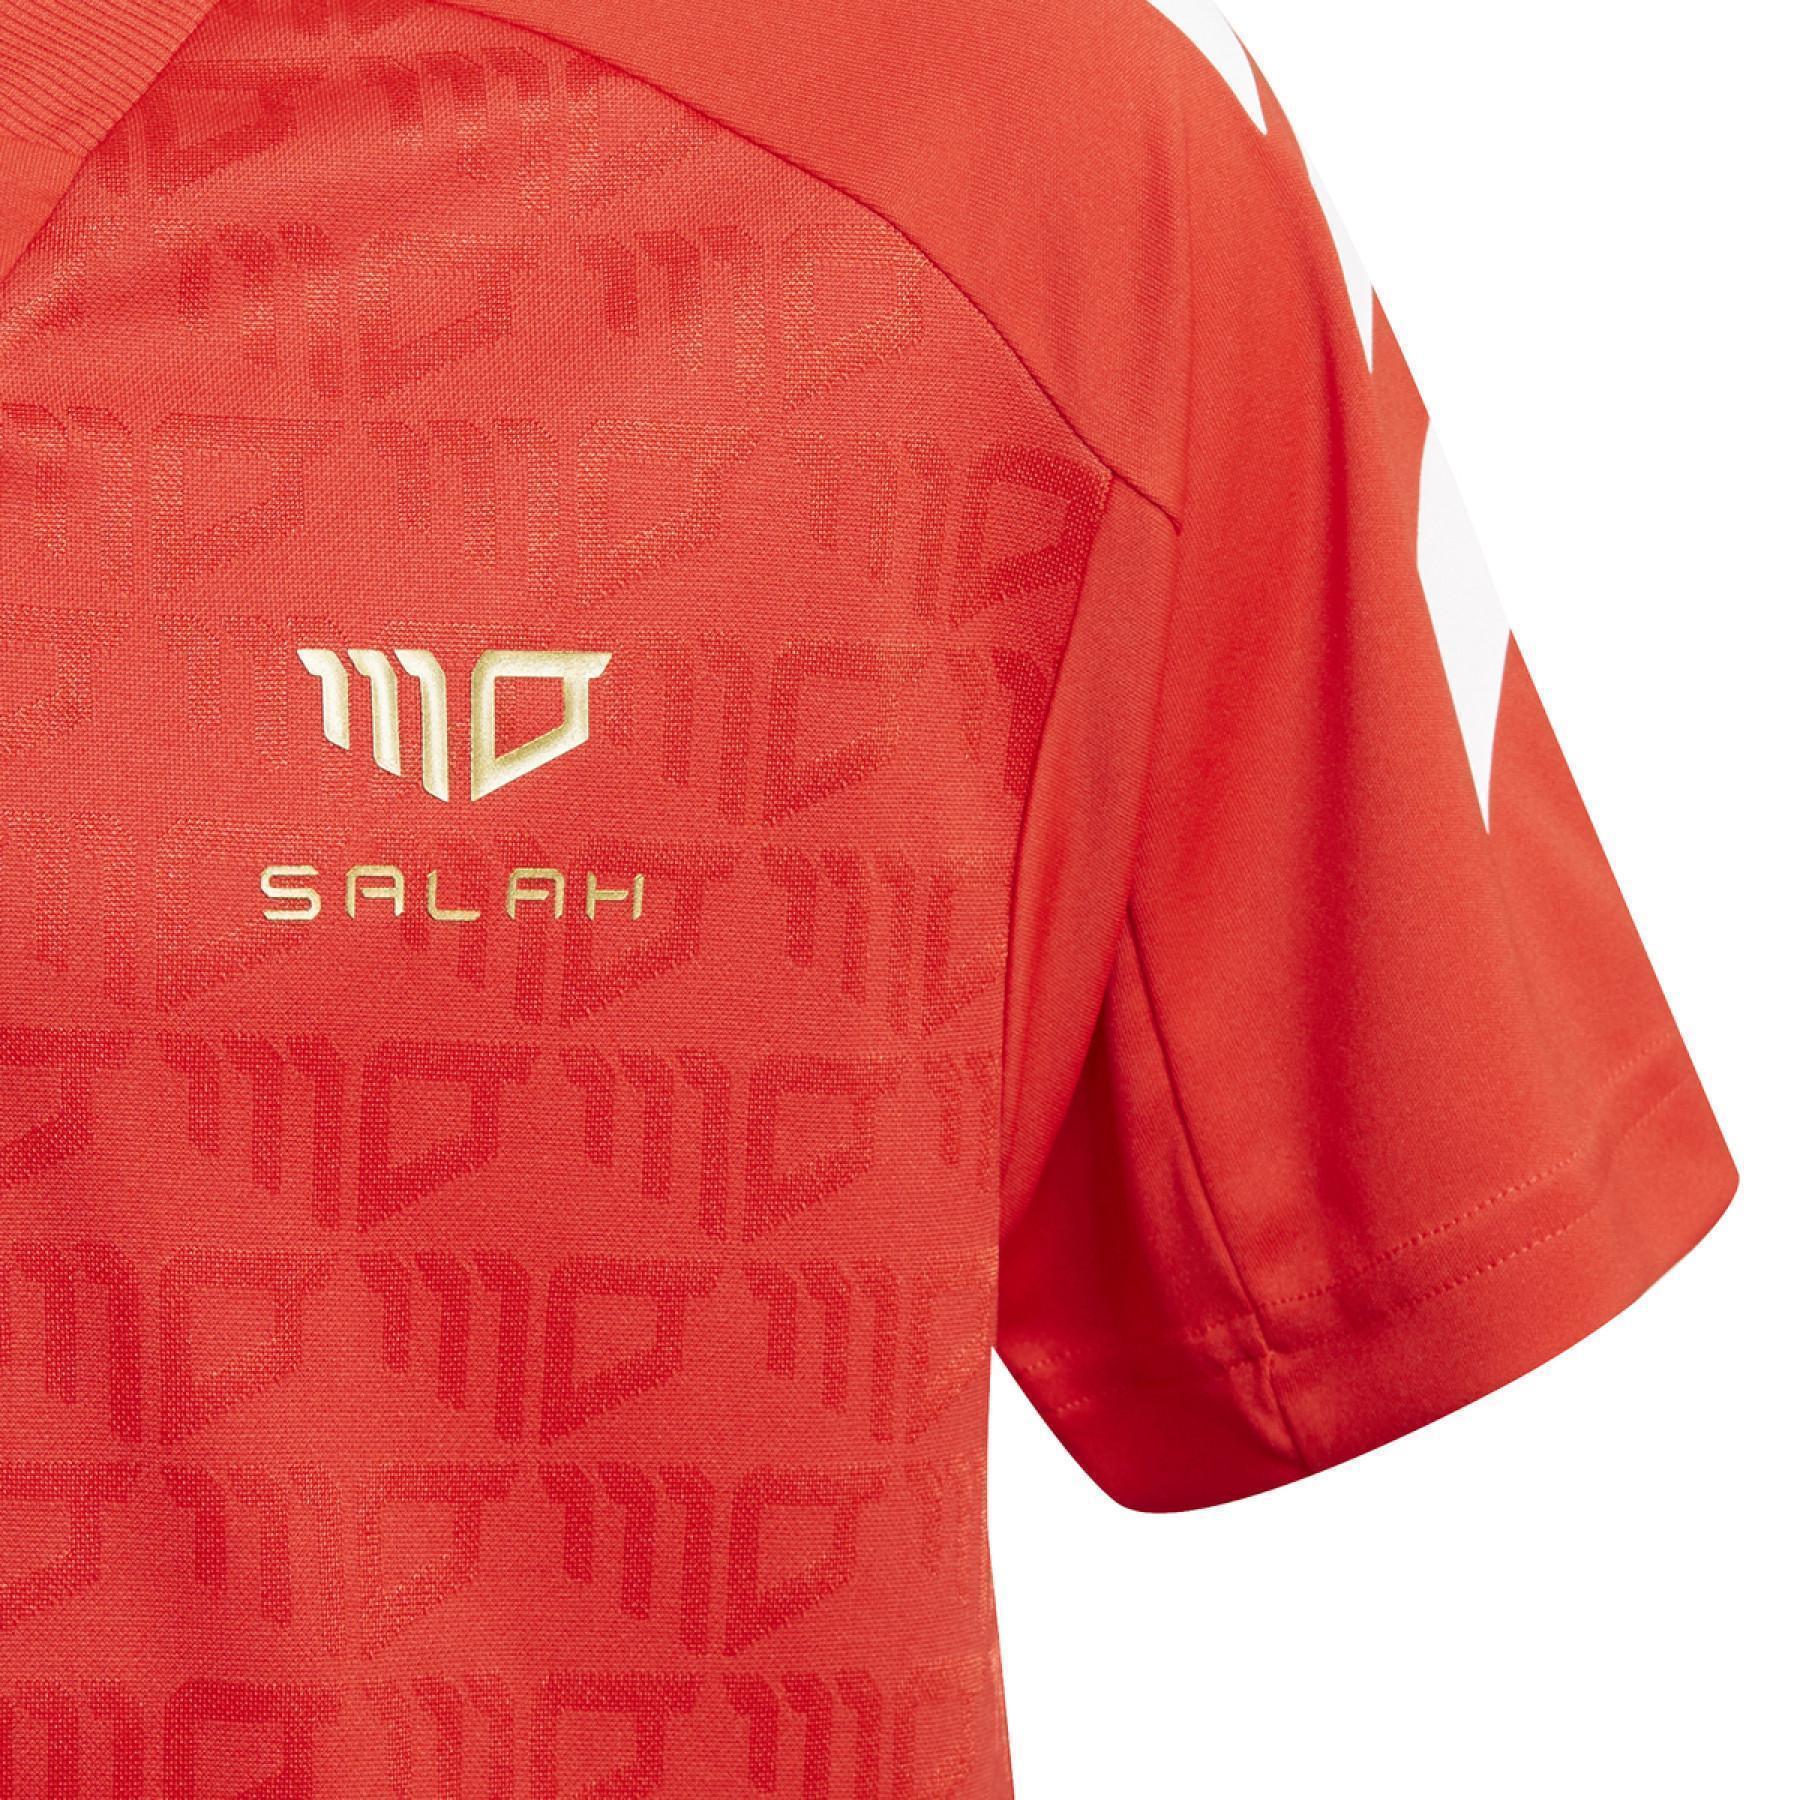 Maillot enfant adidas Salah Football-Inspired